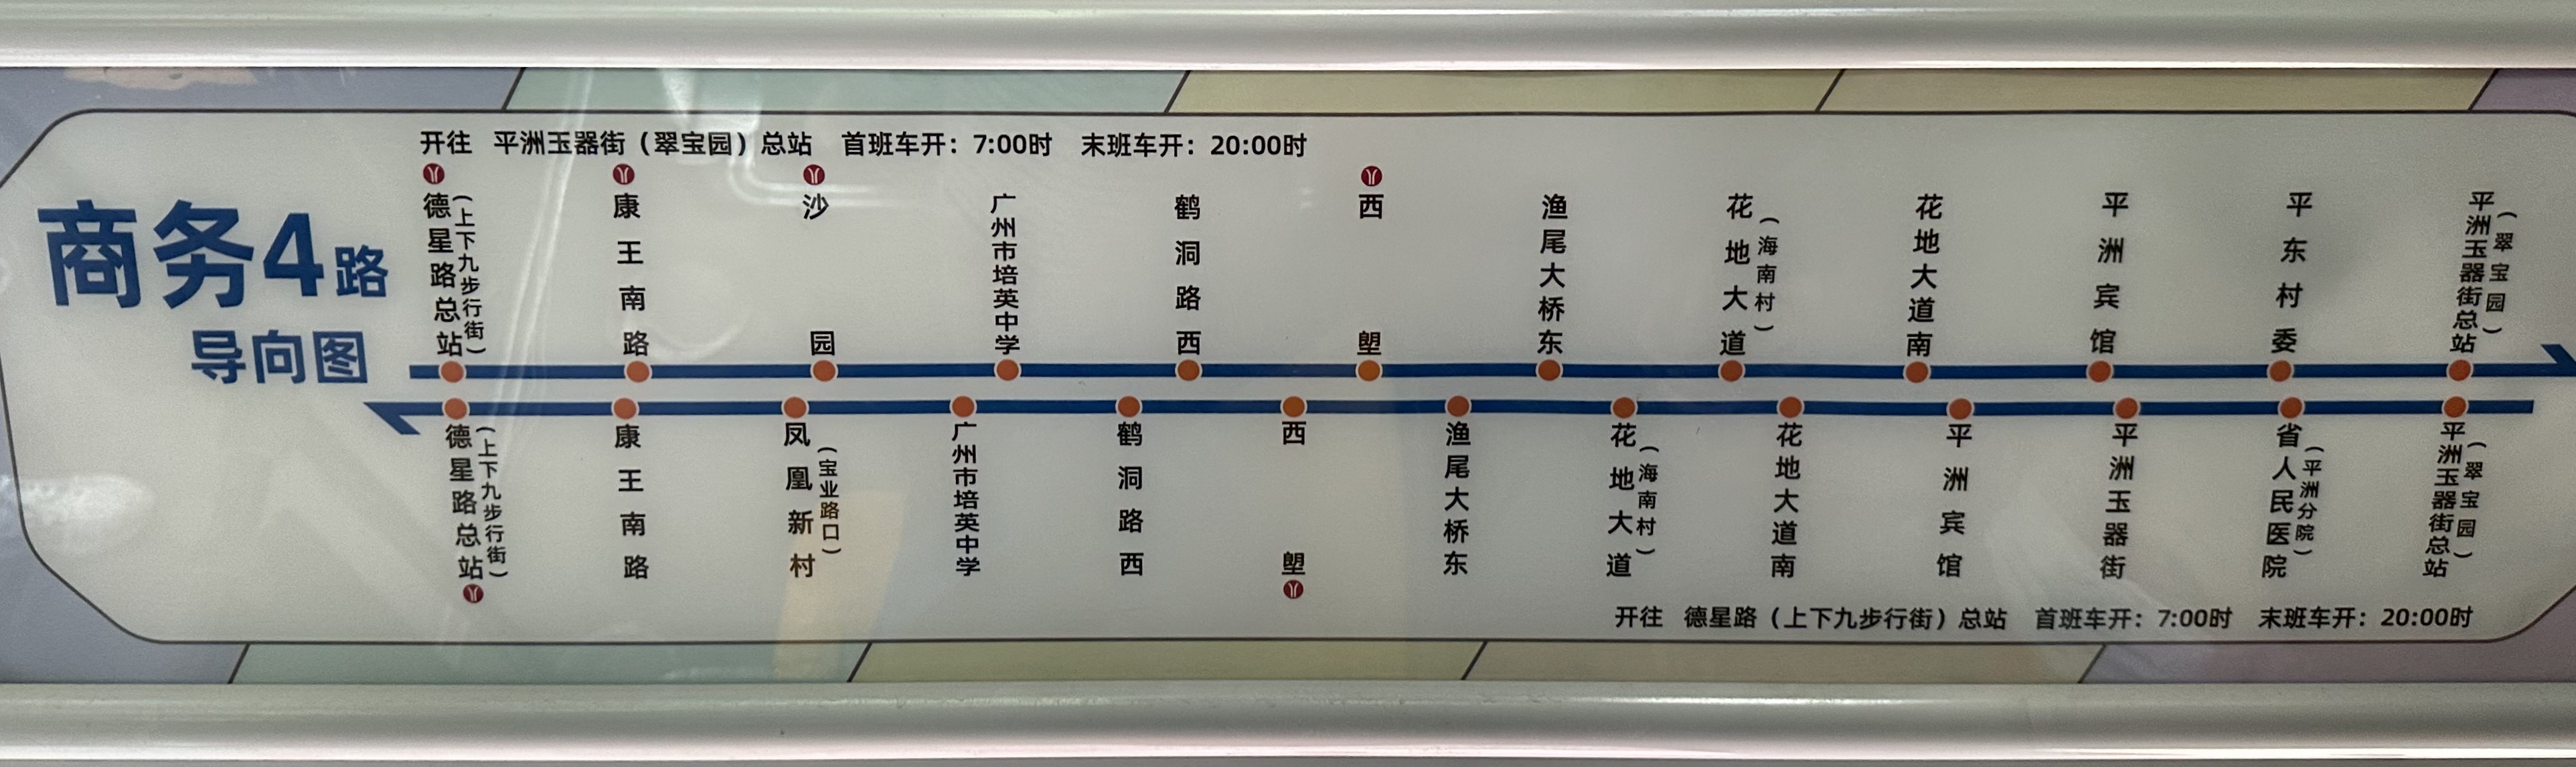 广州商务专线4路公交车路线